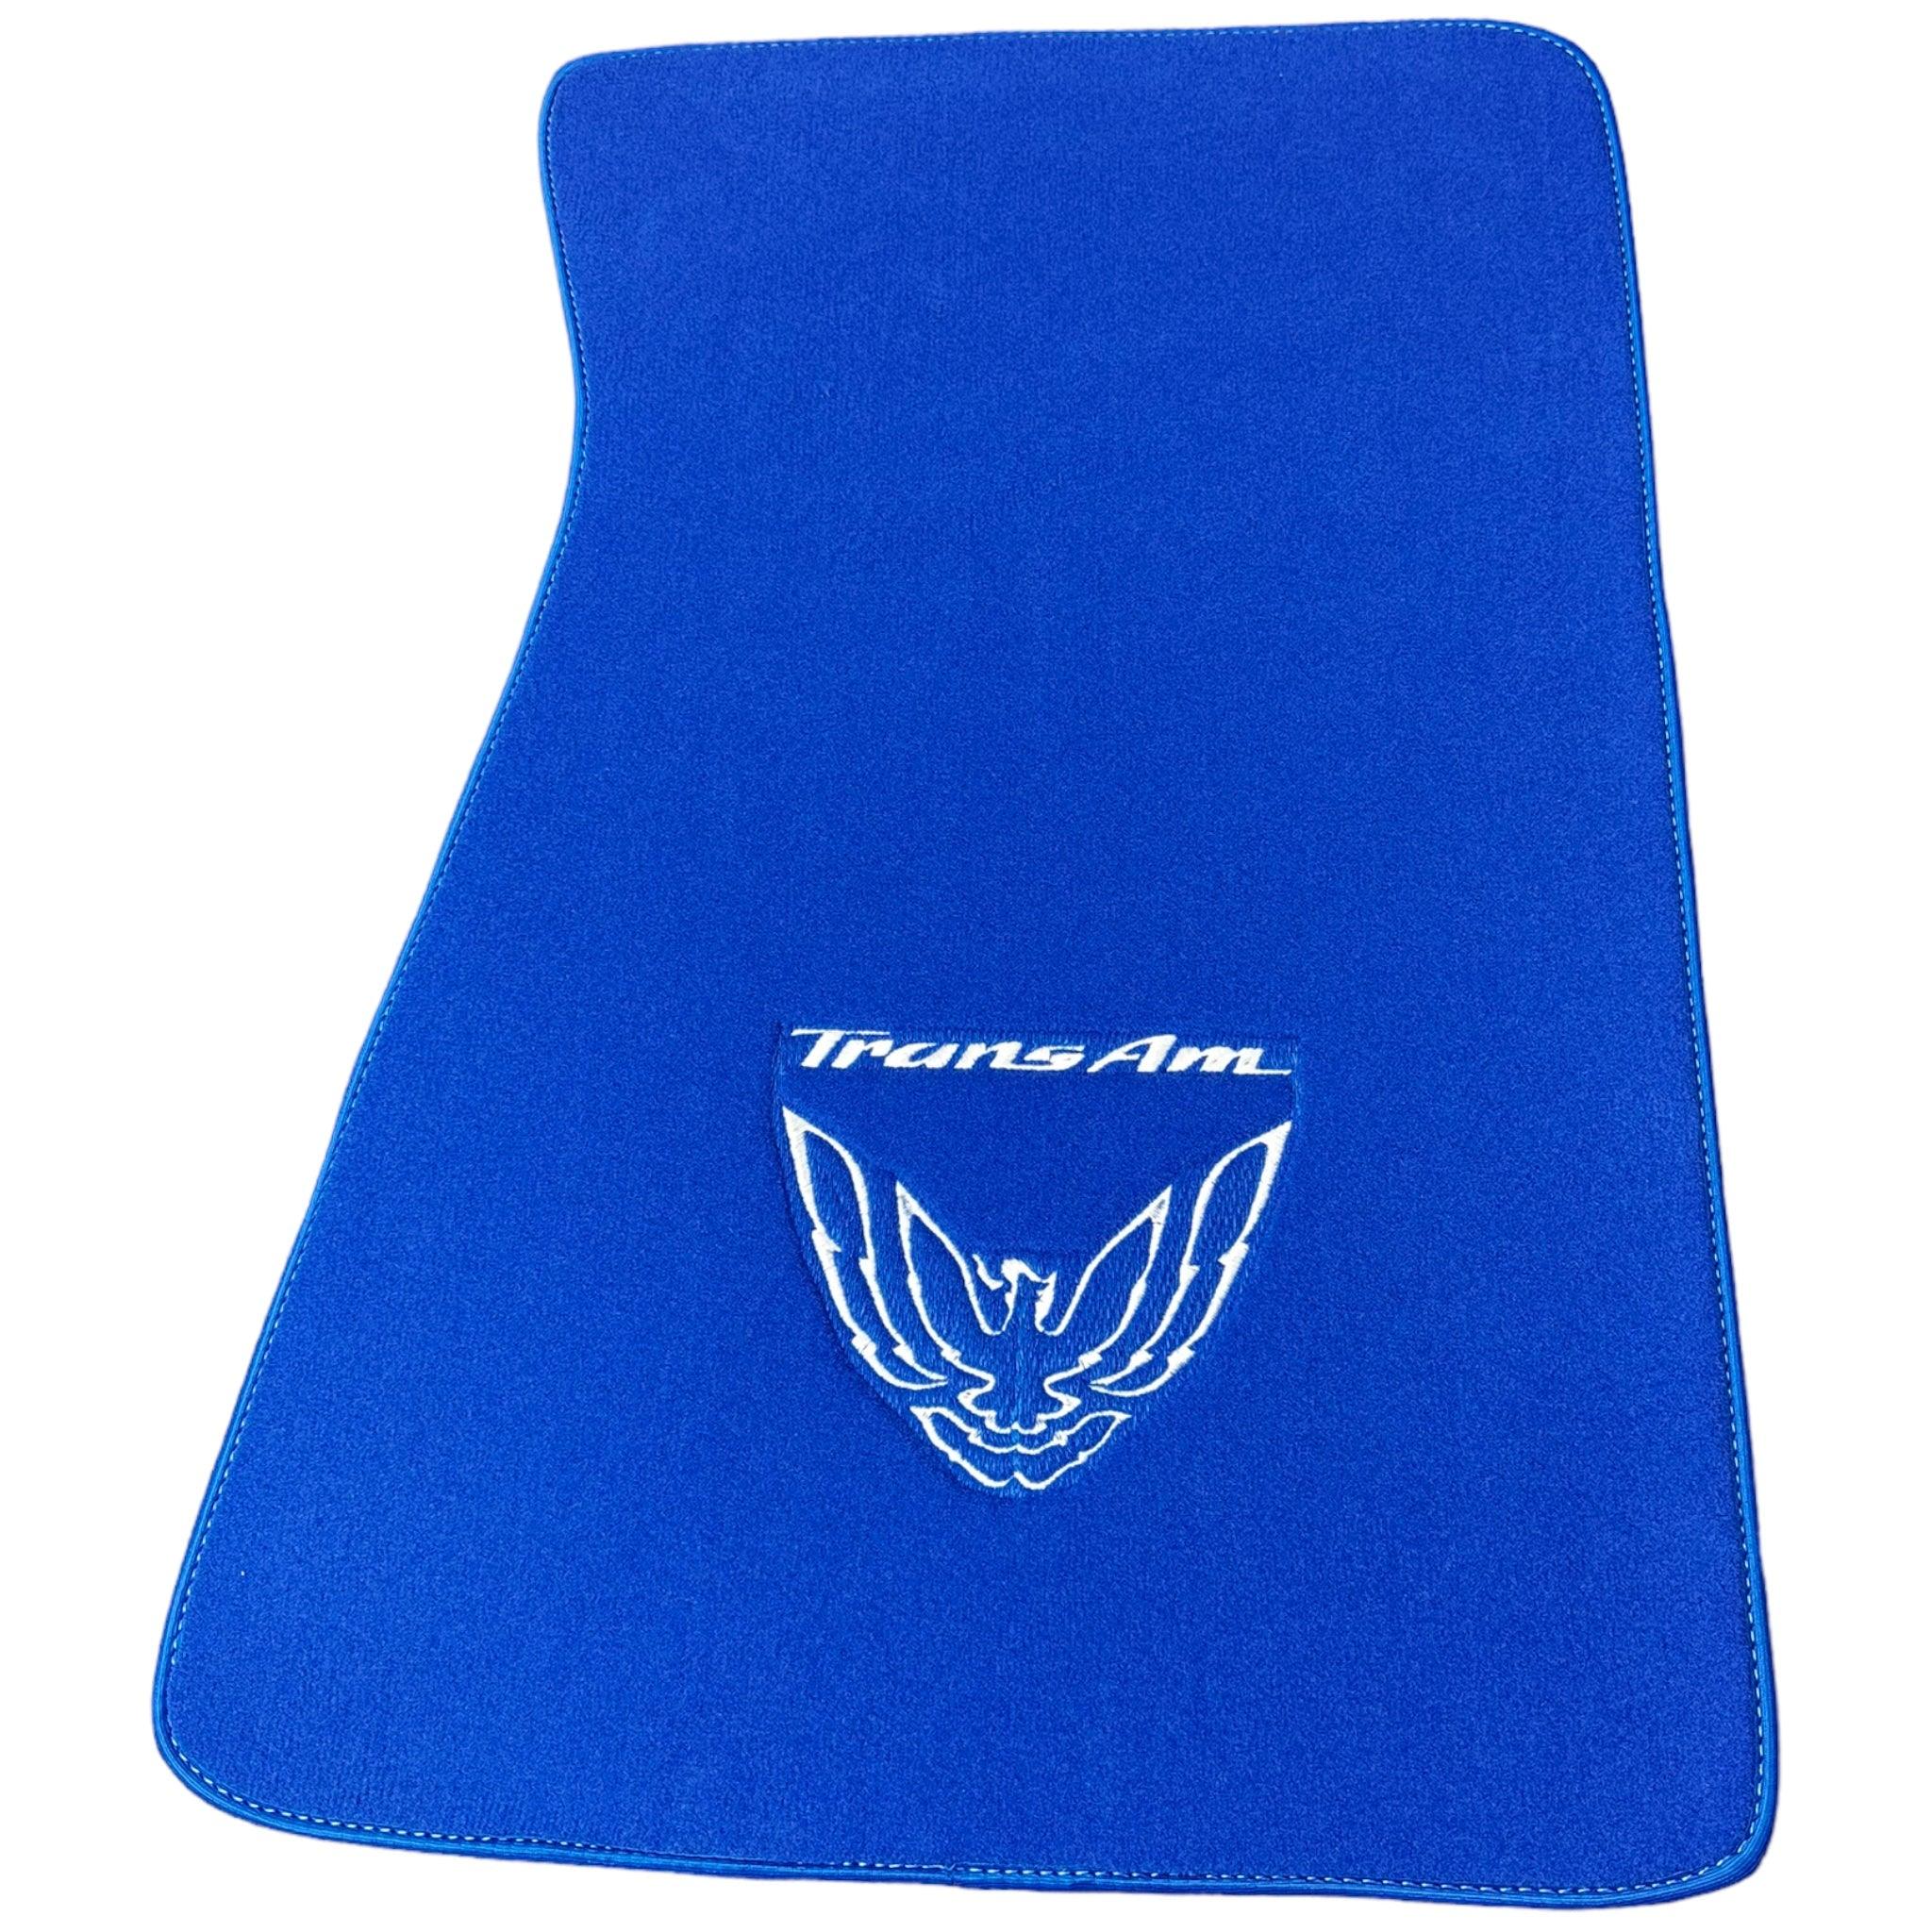 Blue Floor Mats for Pontiac FireBird (1970-1981) with Trans Am Logo